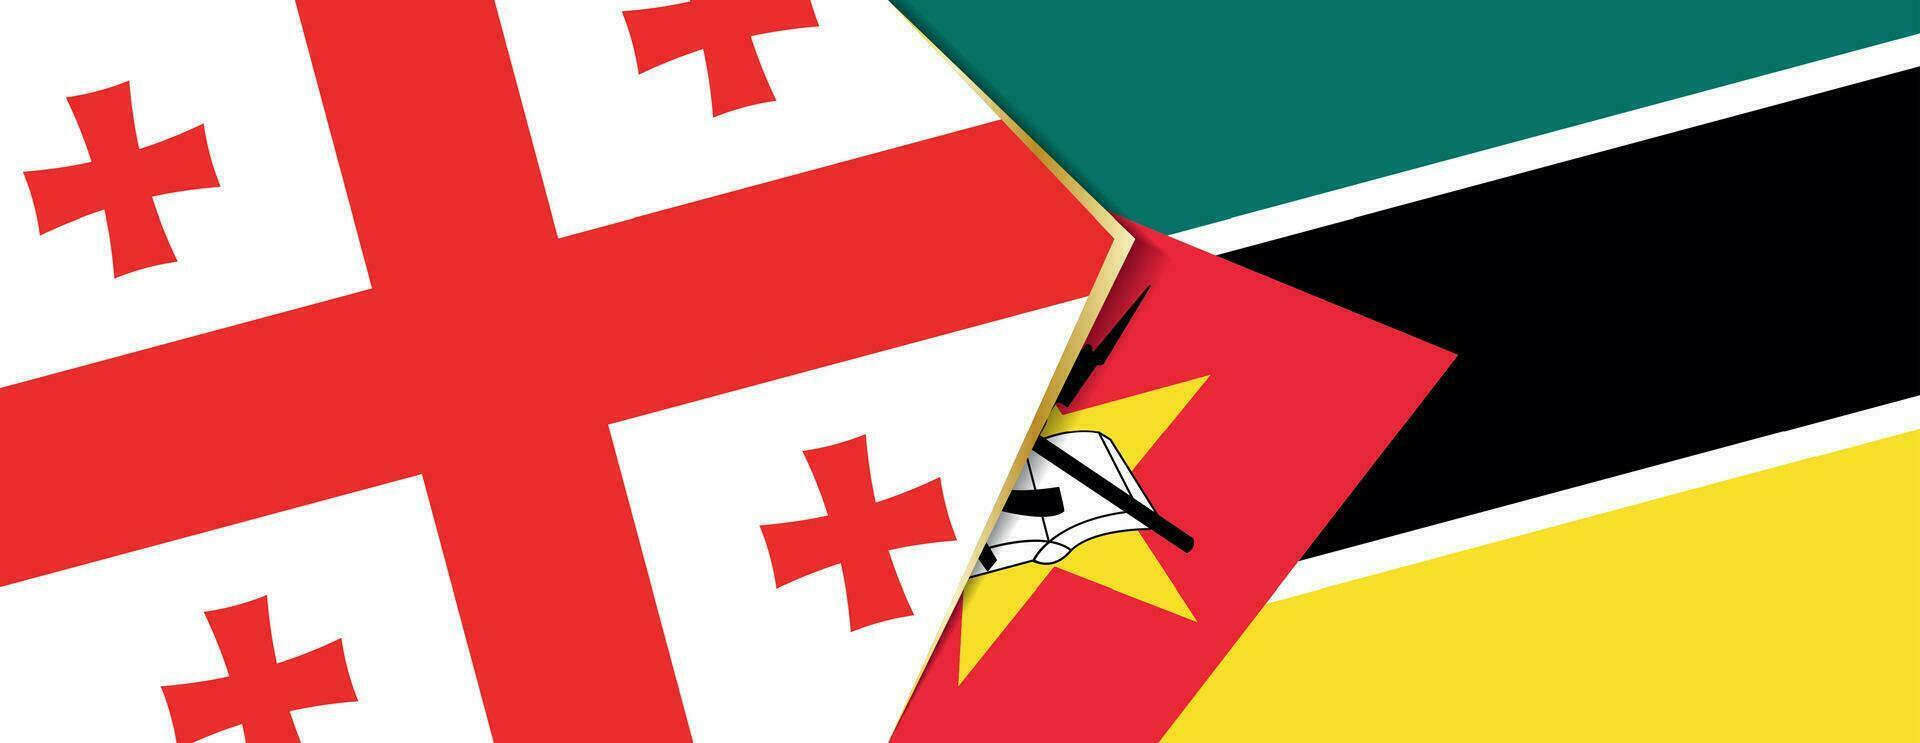 geórgia e Moçambique bandeiras, dois vetor bandeiras.